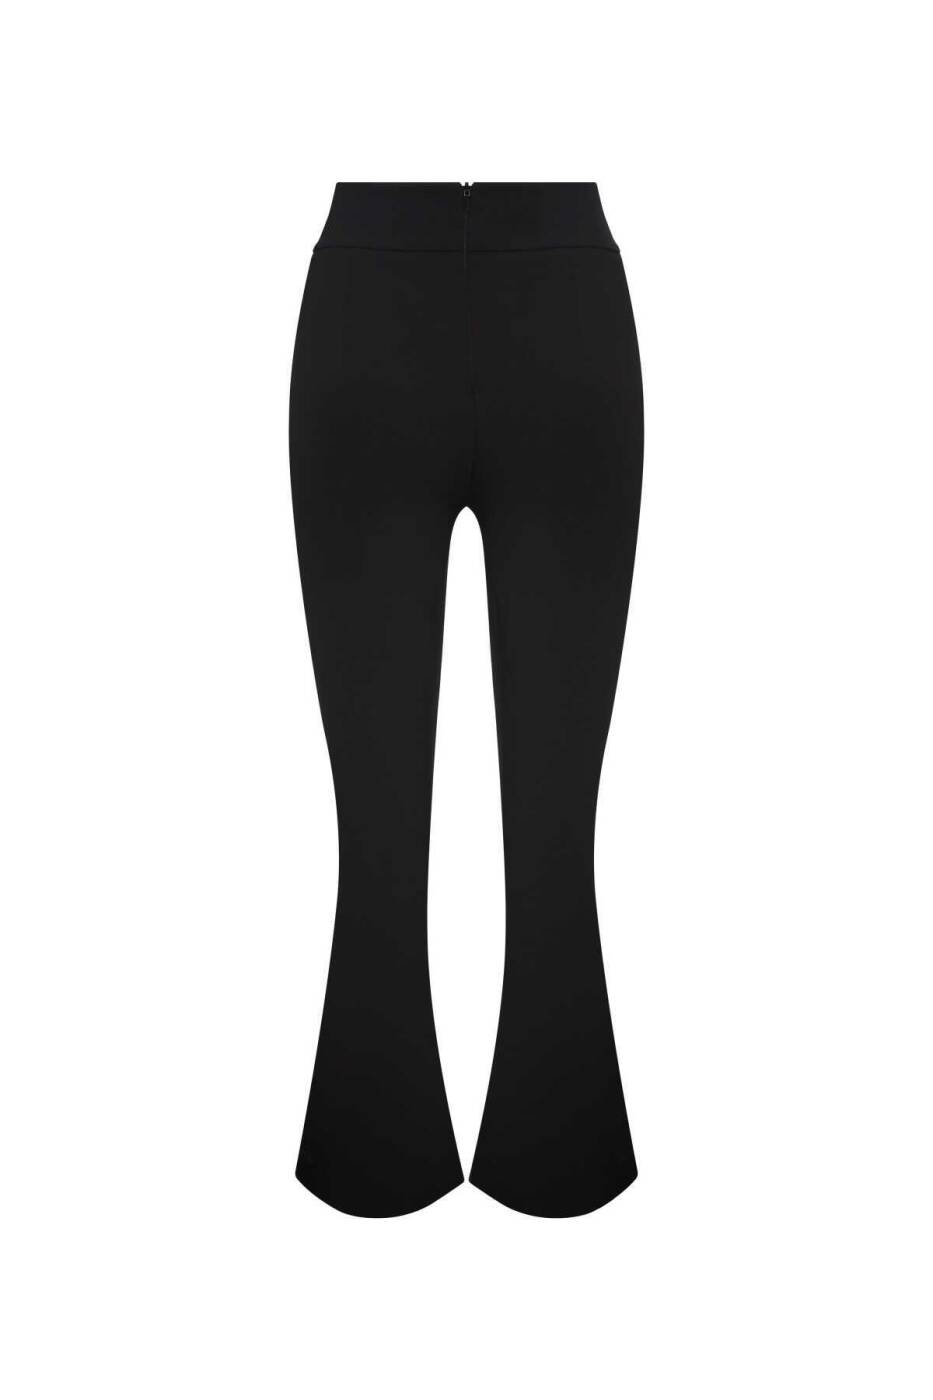  Kemer Detaylı Yırtmaç Paçalı Kadın Pantolon Siyah - 5